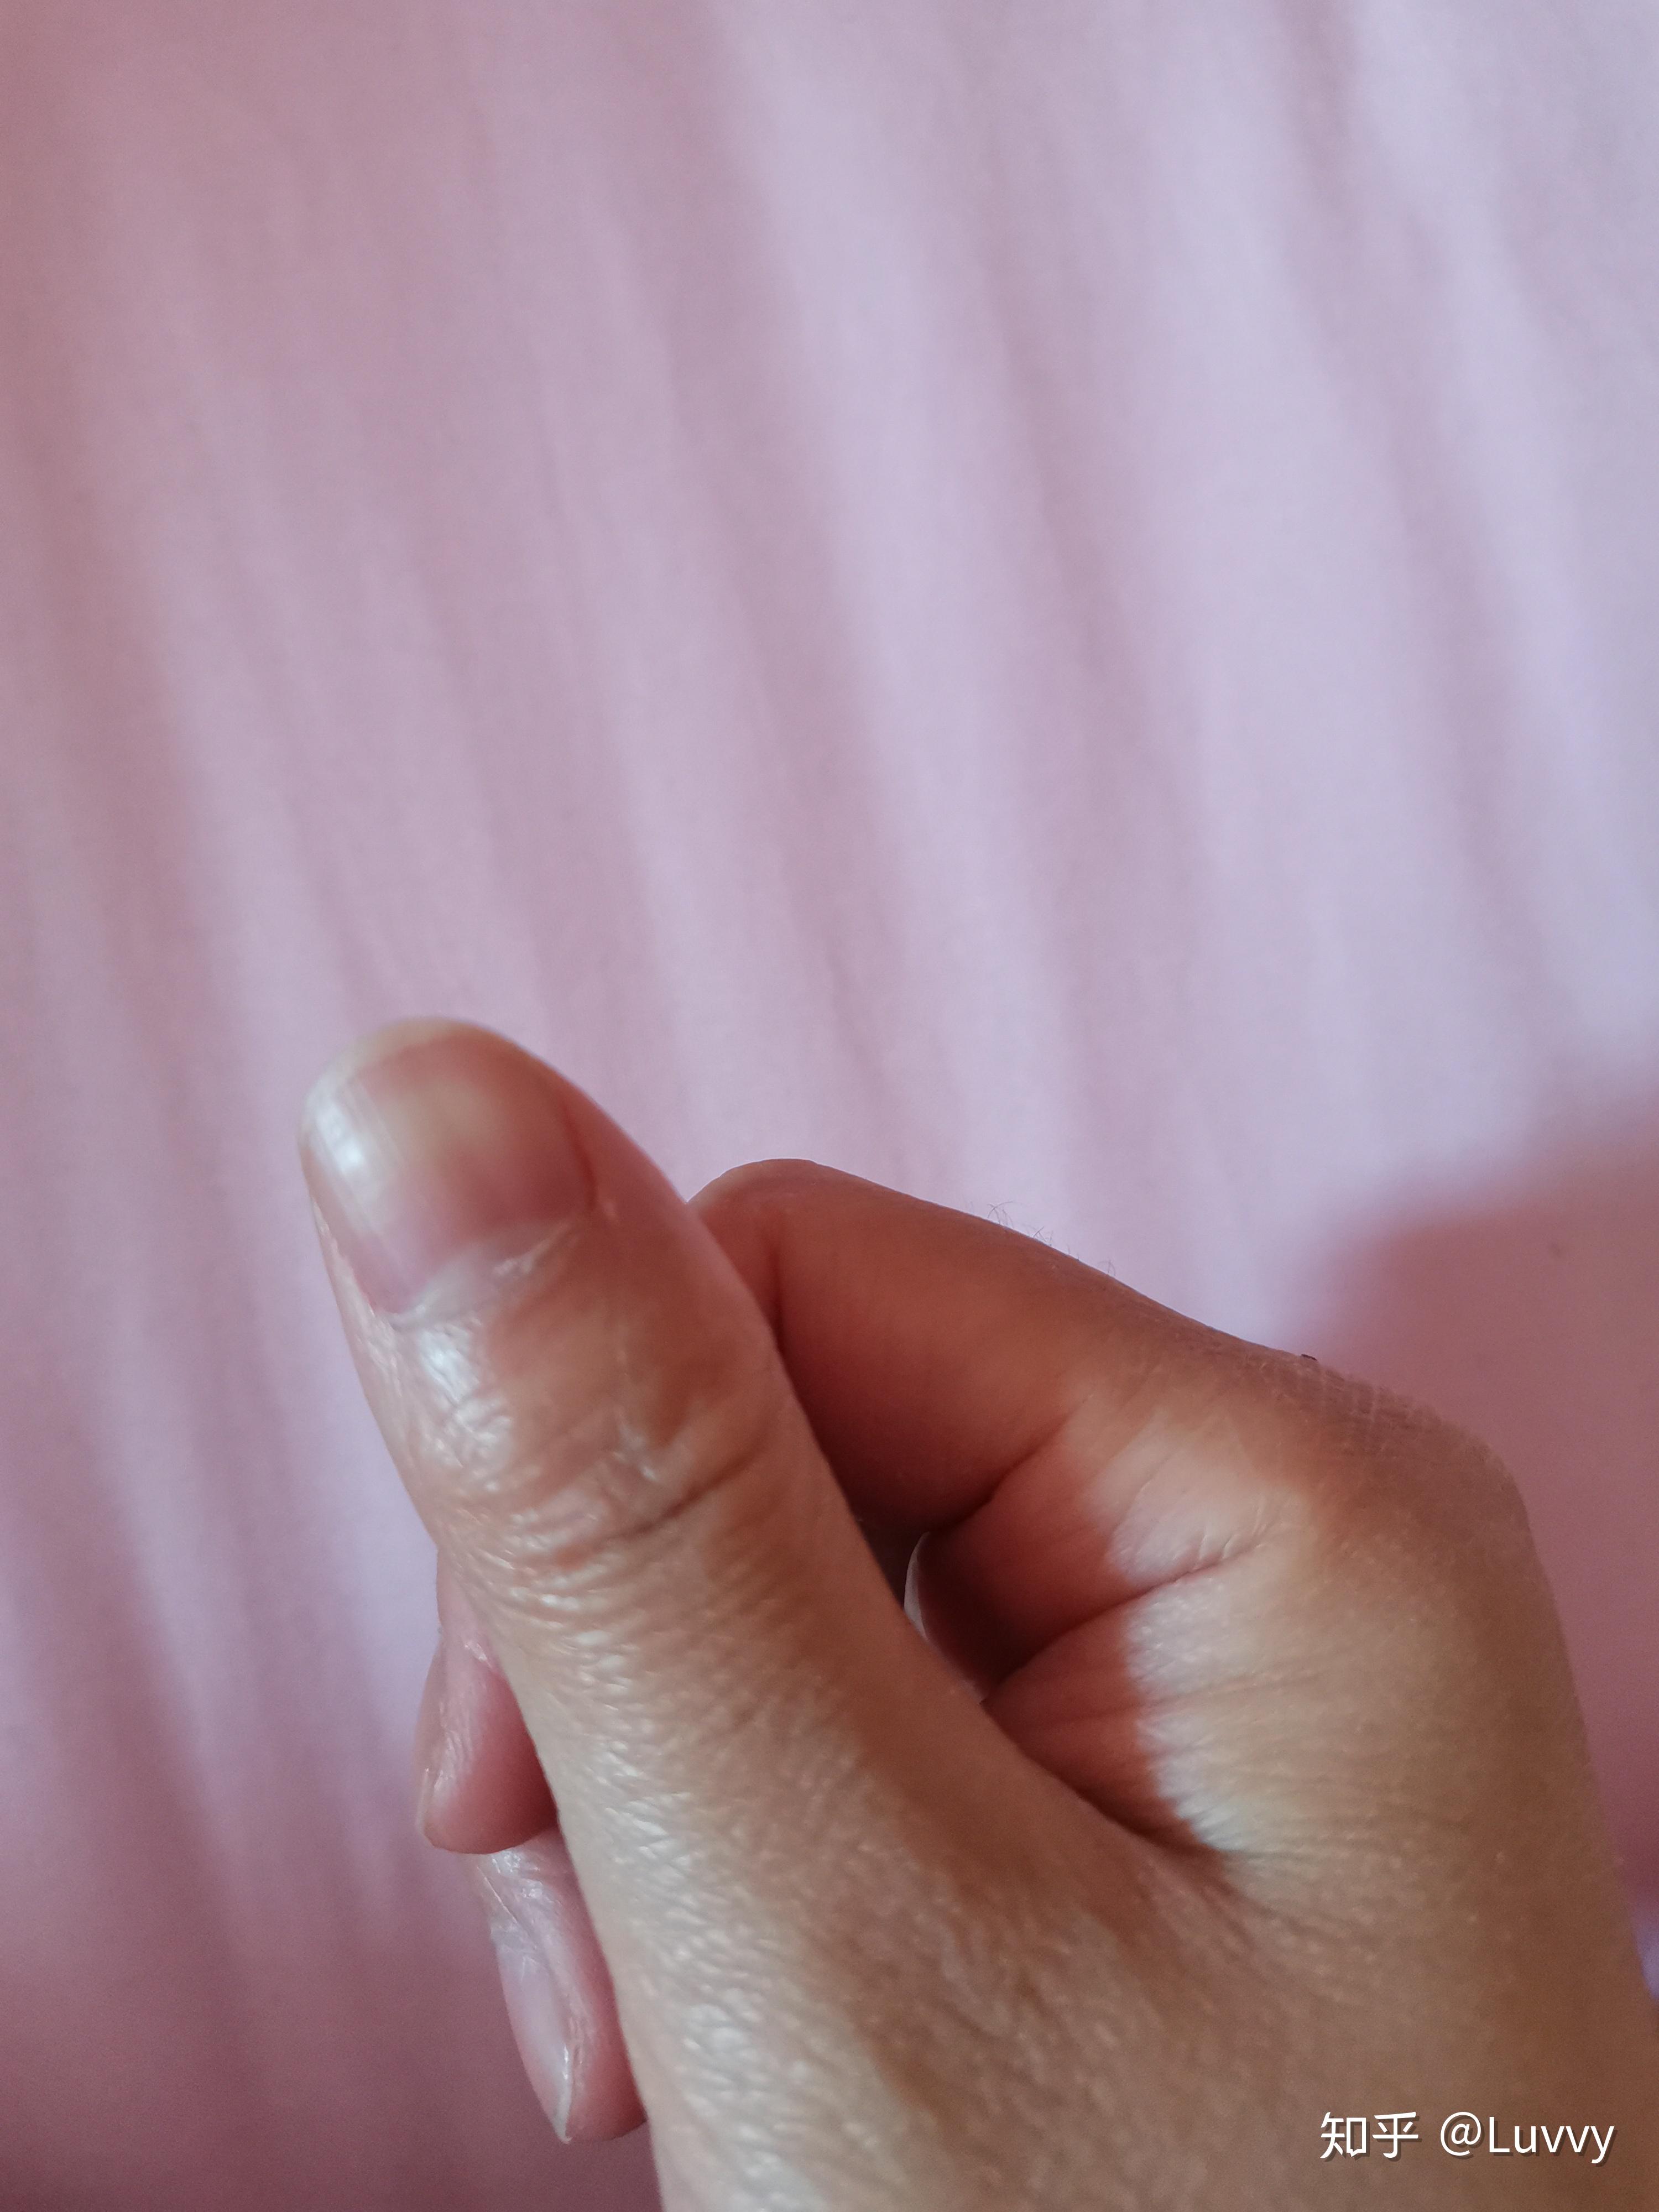 大拇指指甲竖纹图片